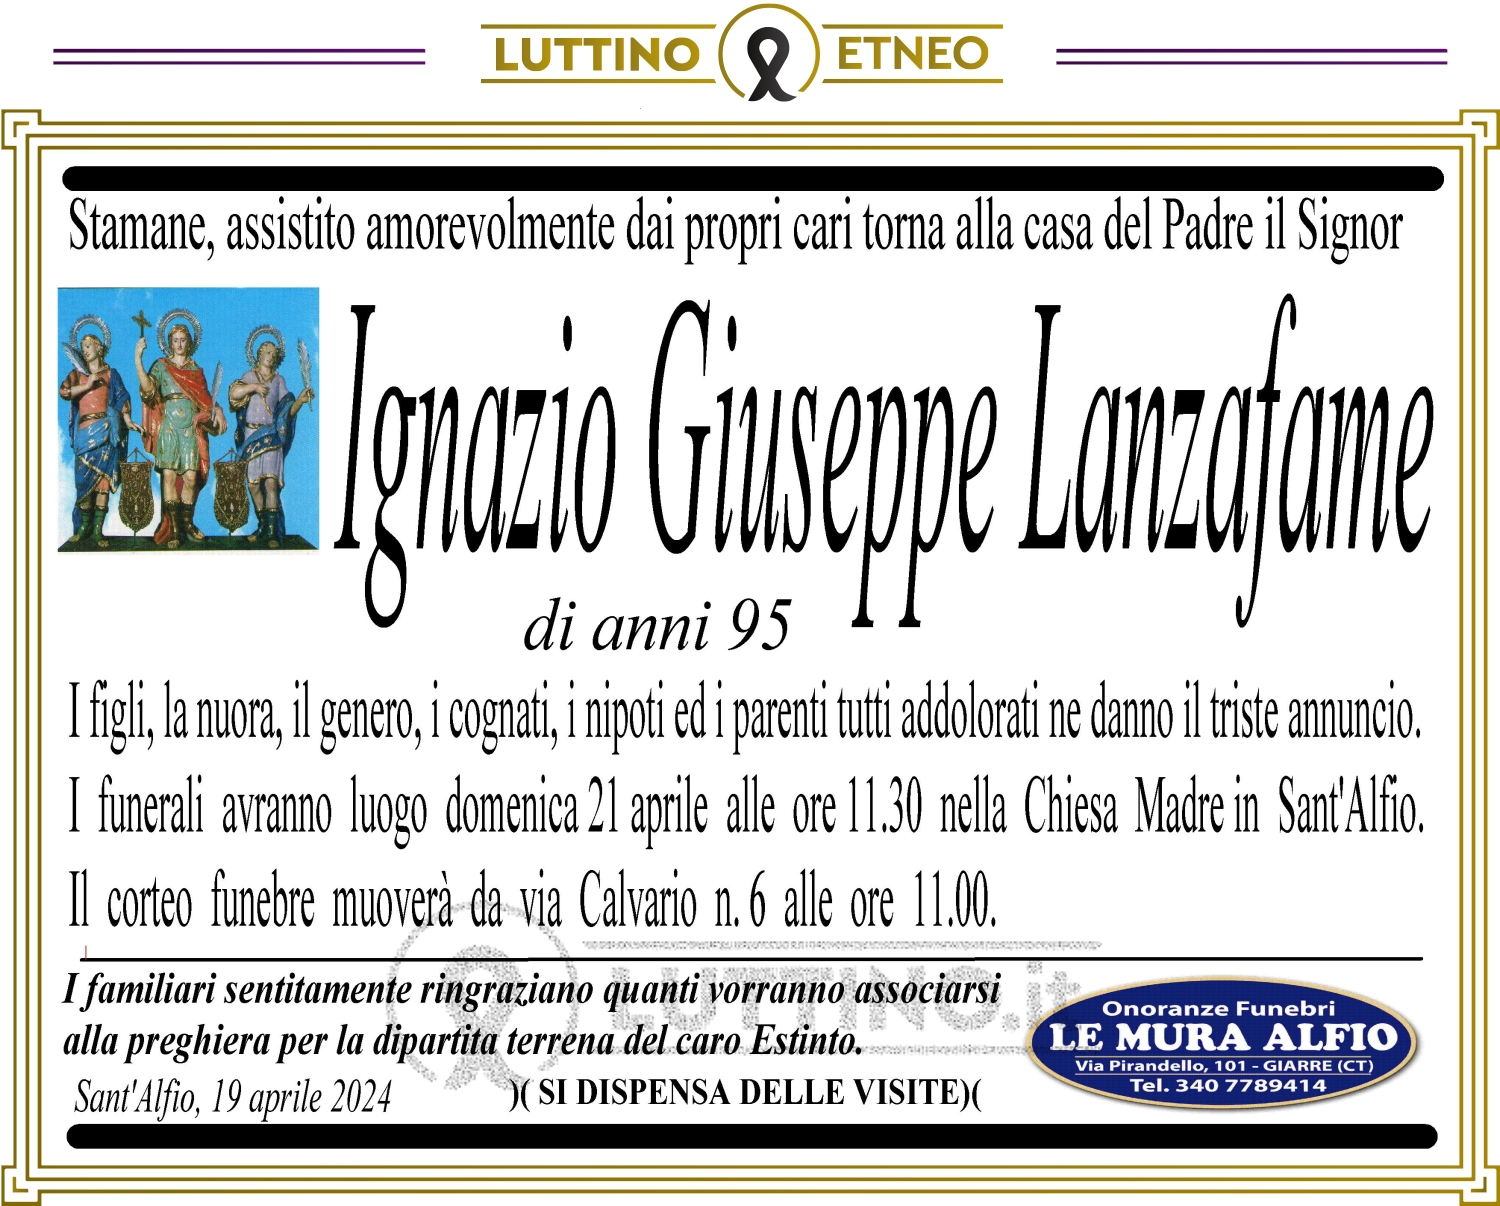 Ignazio Giuseppe Lanzafame